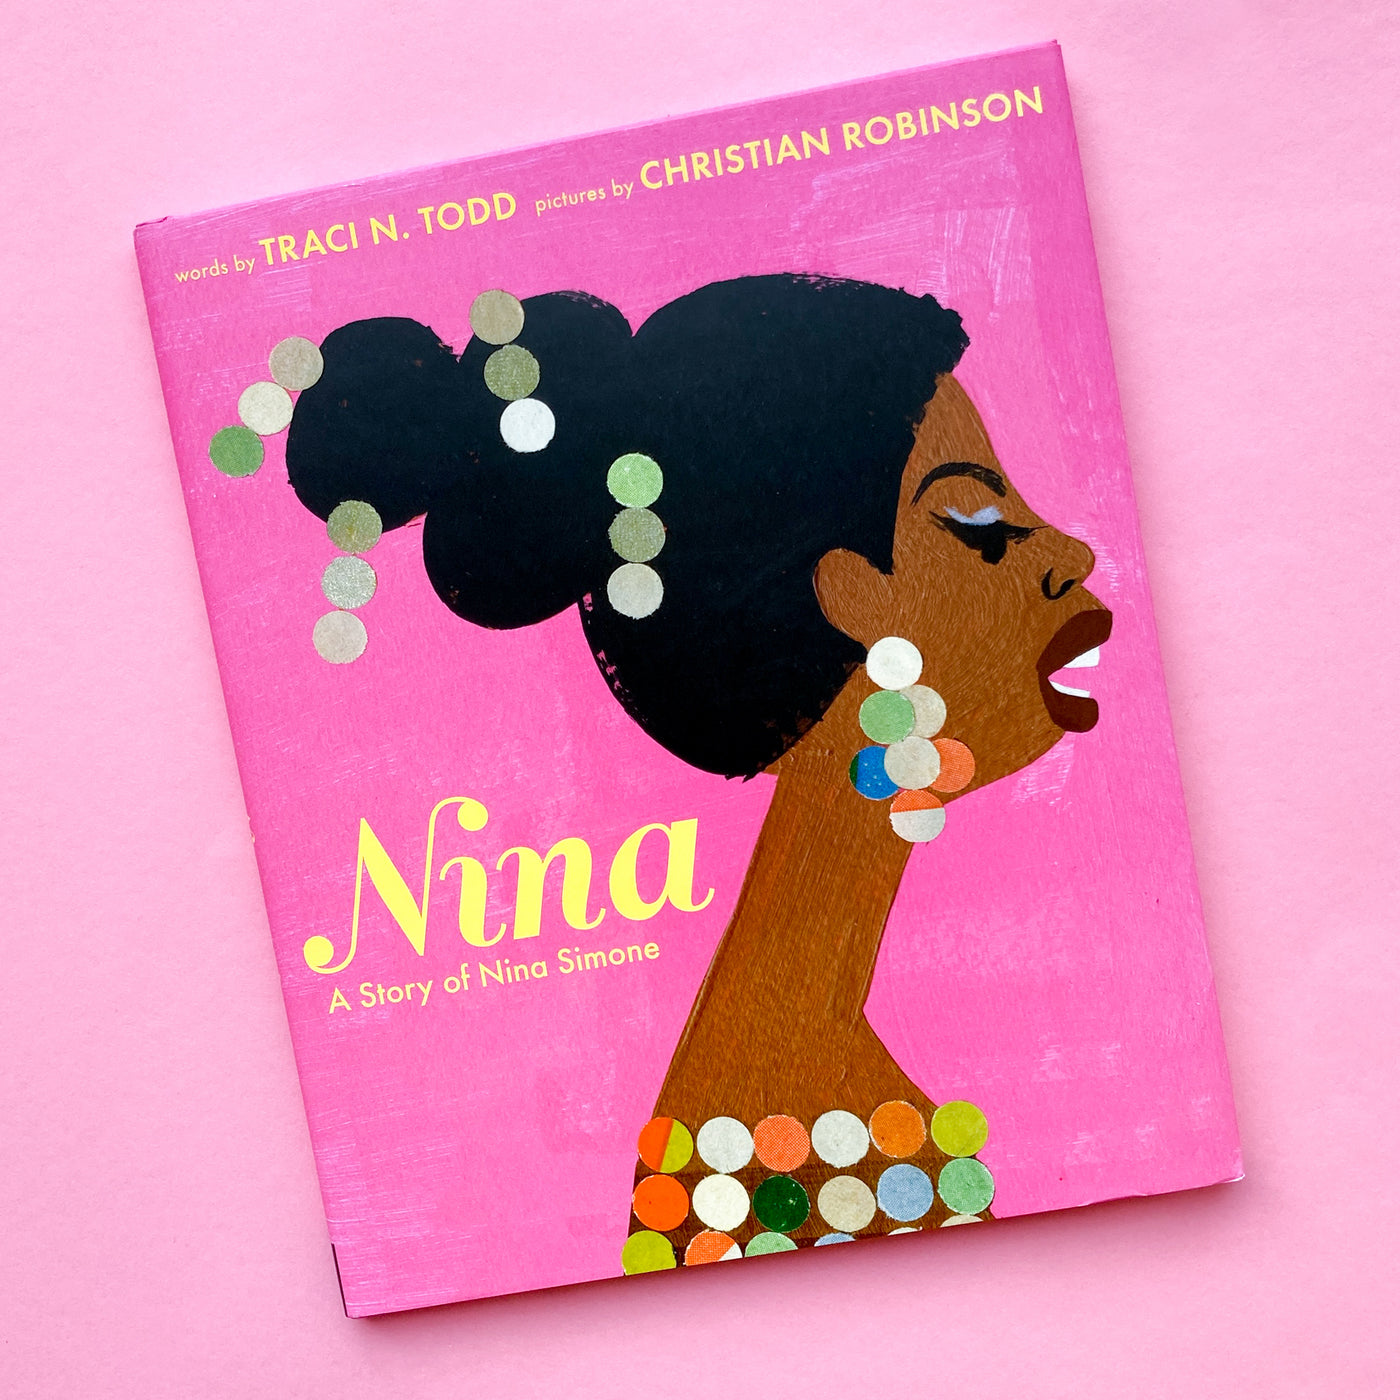 Nina: A Story of Nina Simone by Traci N. Todd and Christian Robinson